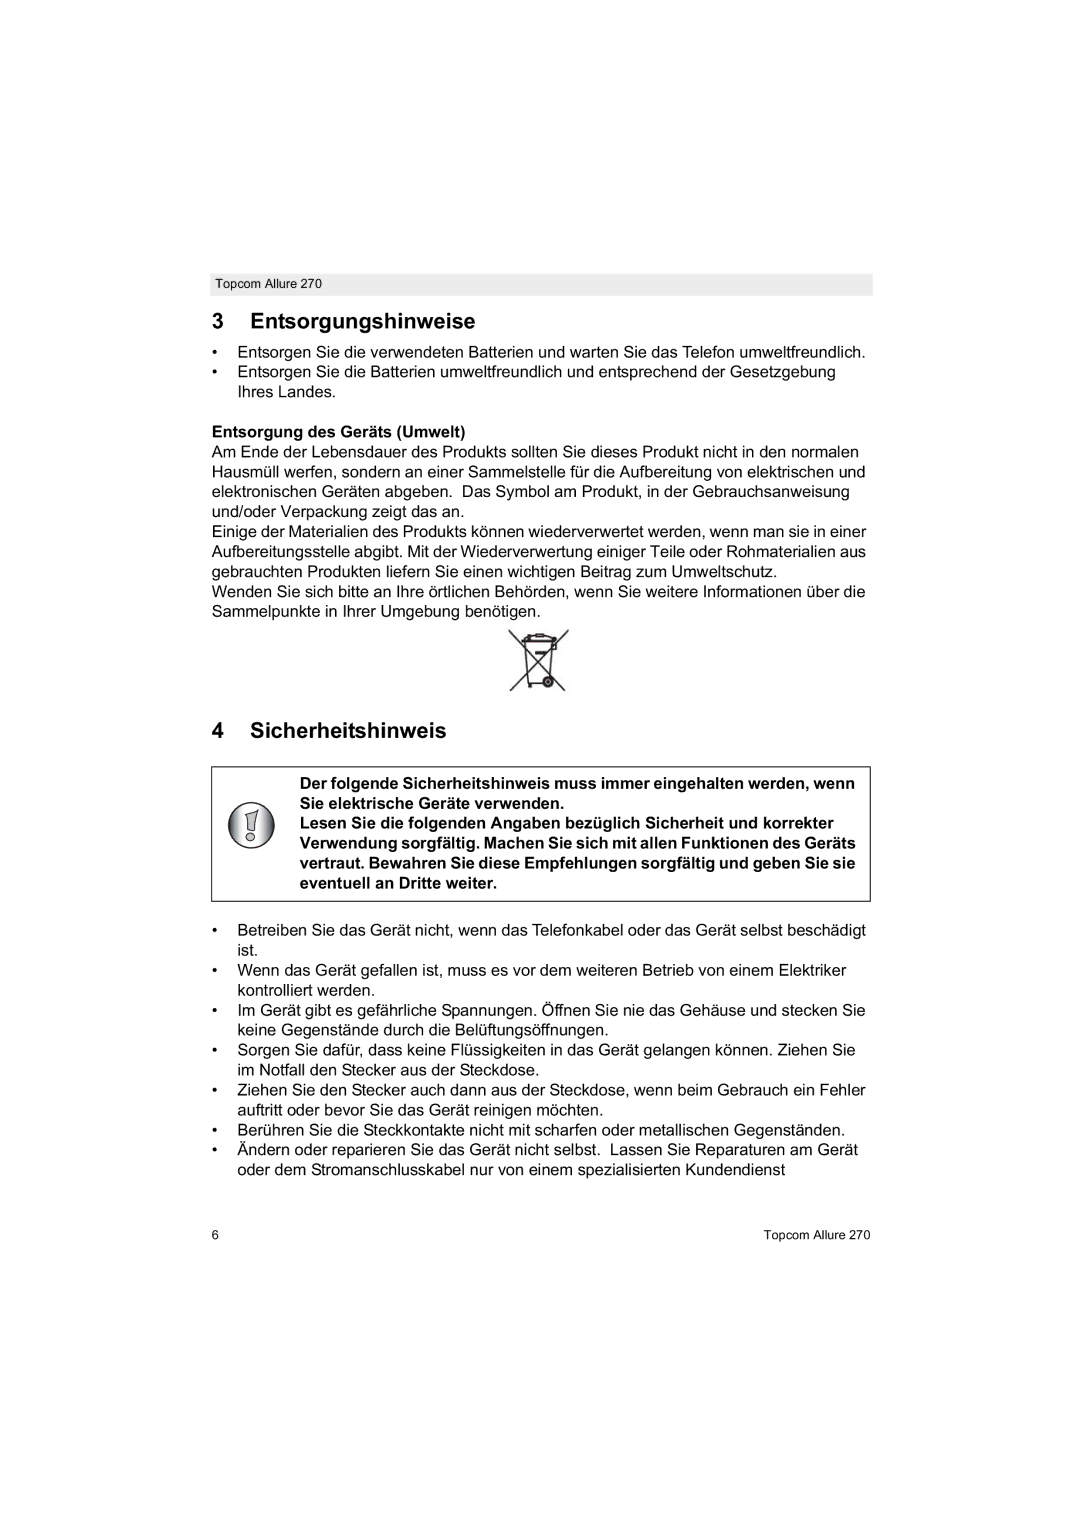 Topcom 270 manual Entsorgungshinweise, Sicherheitshinweis, Entsorgung des Geräts Umwelt 